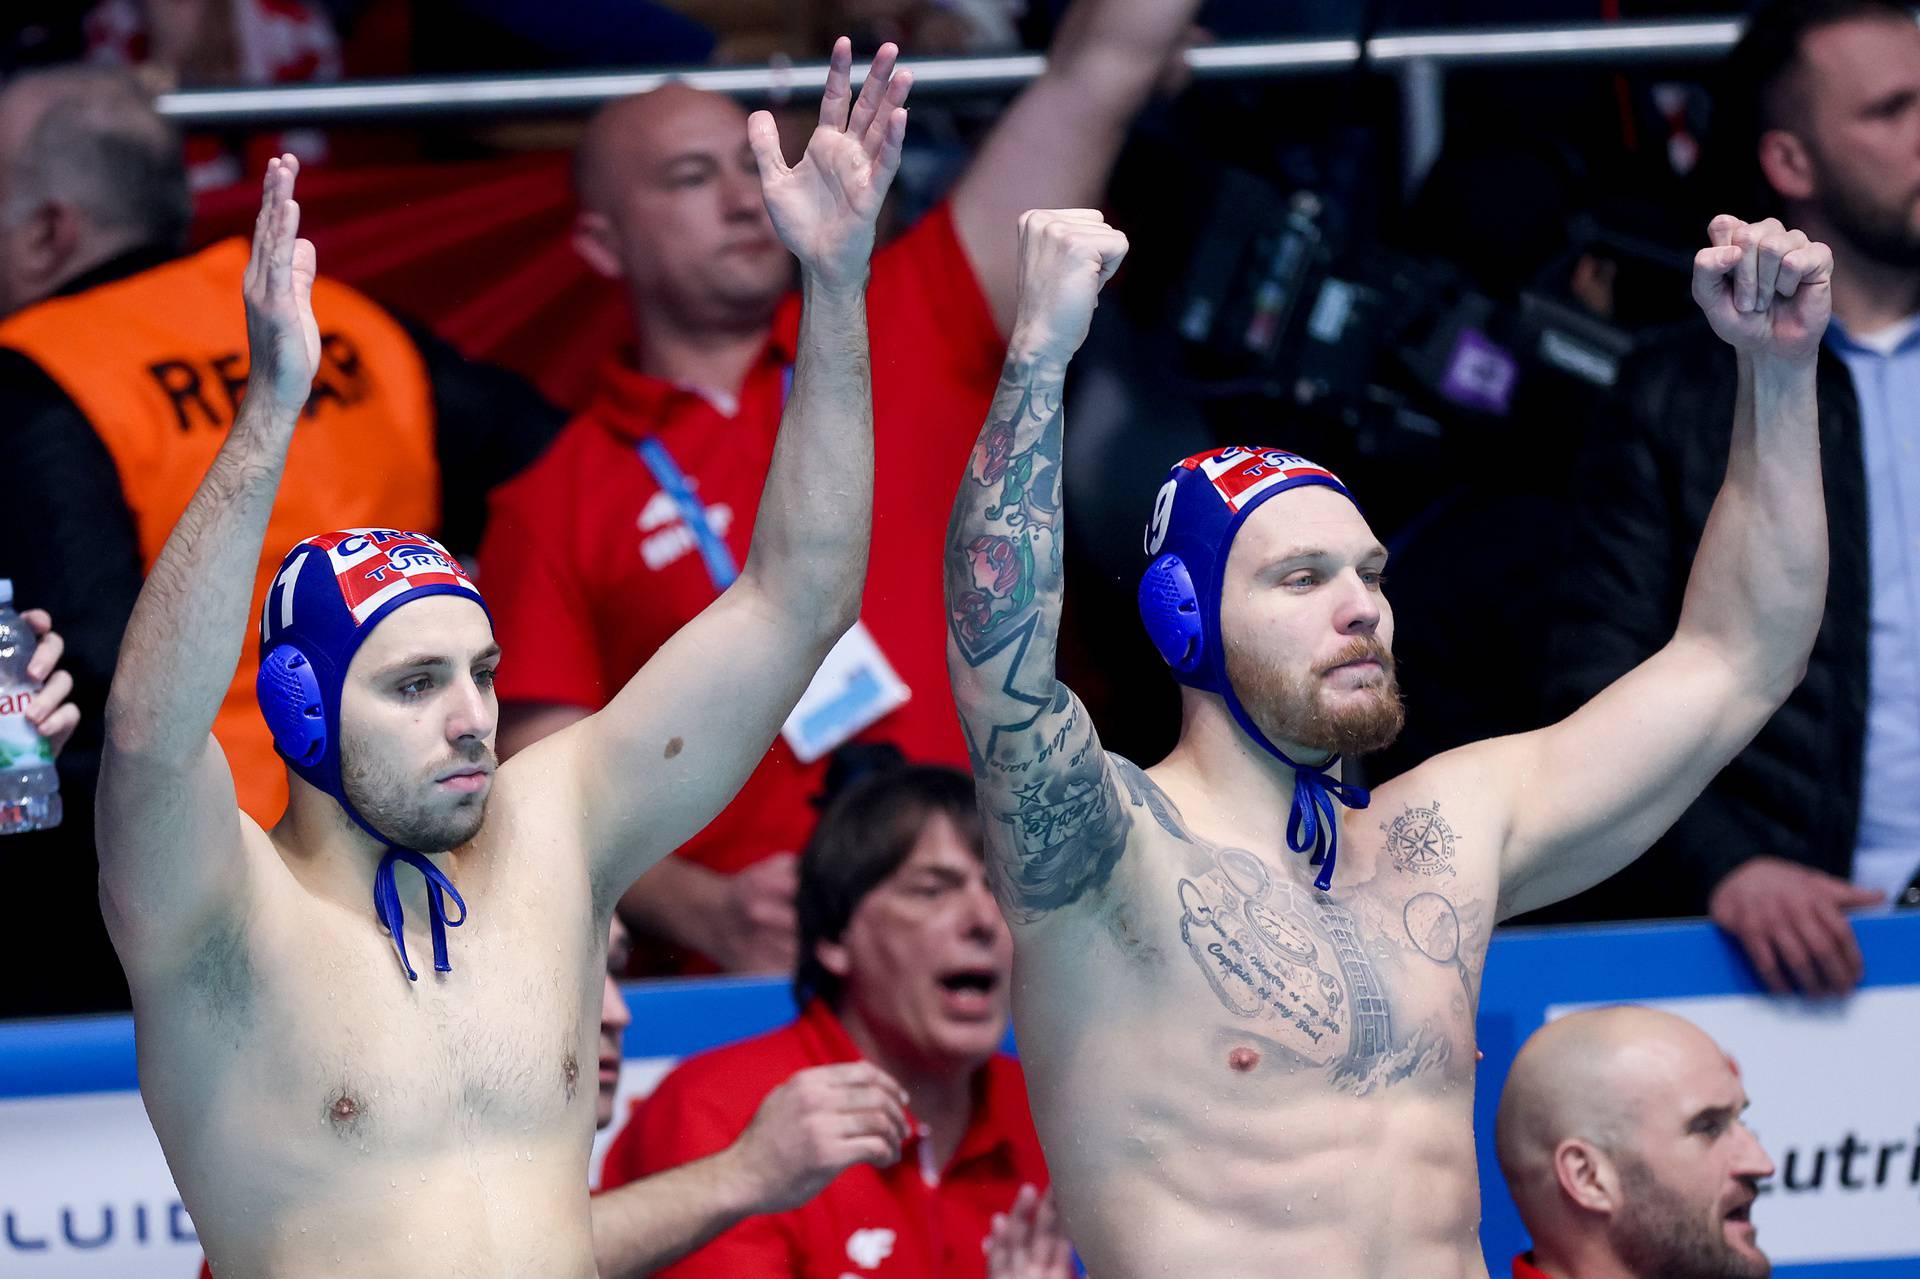 Zagreb: Hrvatska svladala Mađarsku i odlazi u finale Europskog prvenstva u vaterpolu